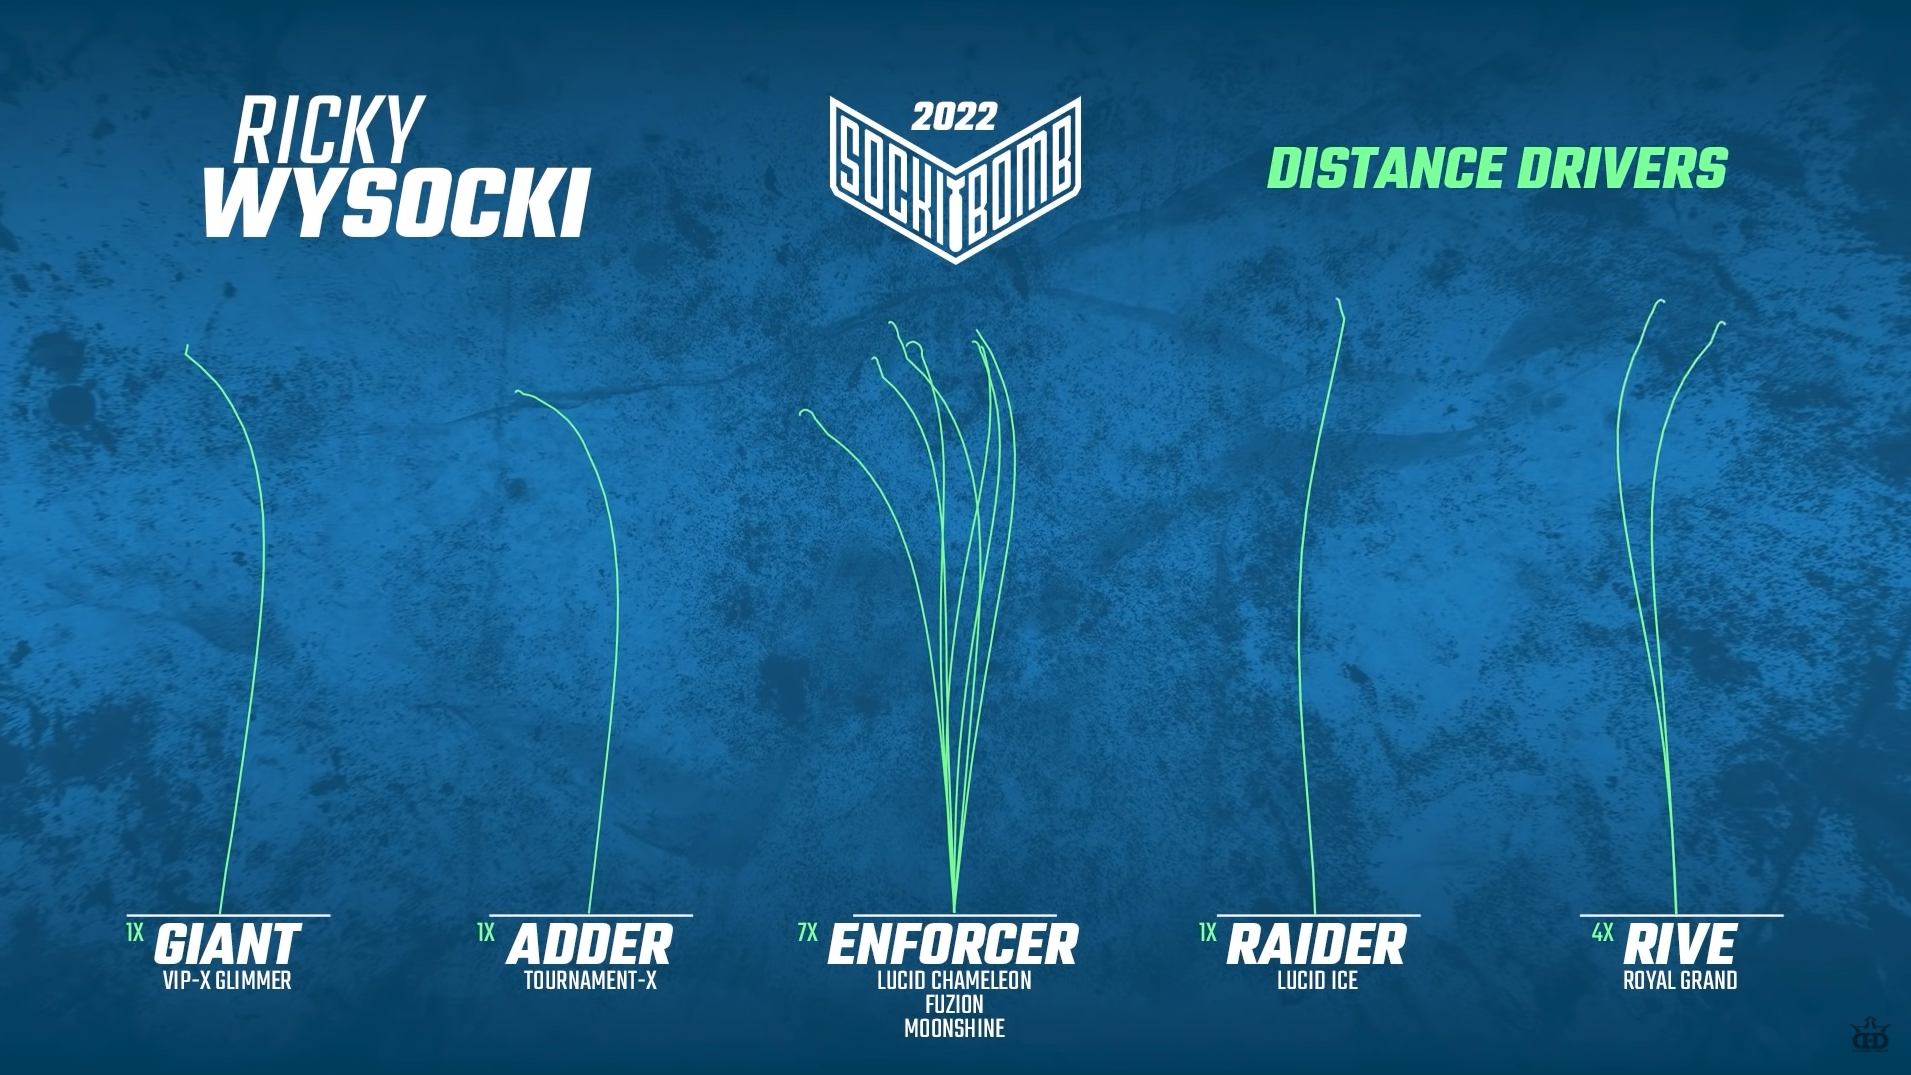 Ricky Wysocki in the bag 2022 - Ricky Wysocki distance drivers